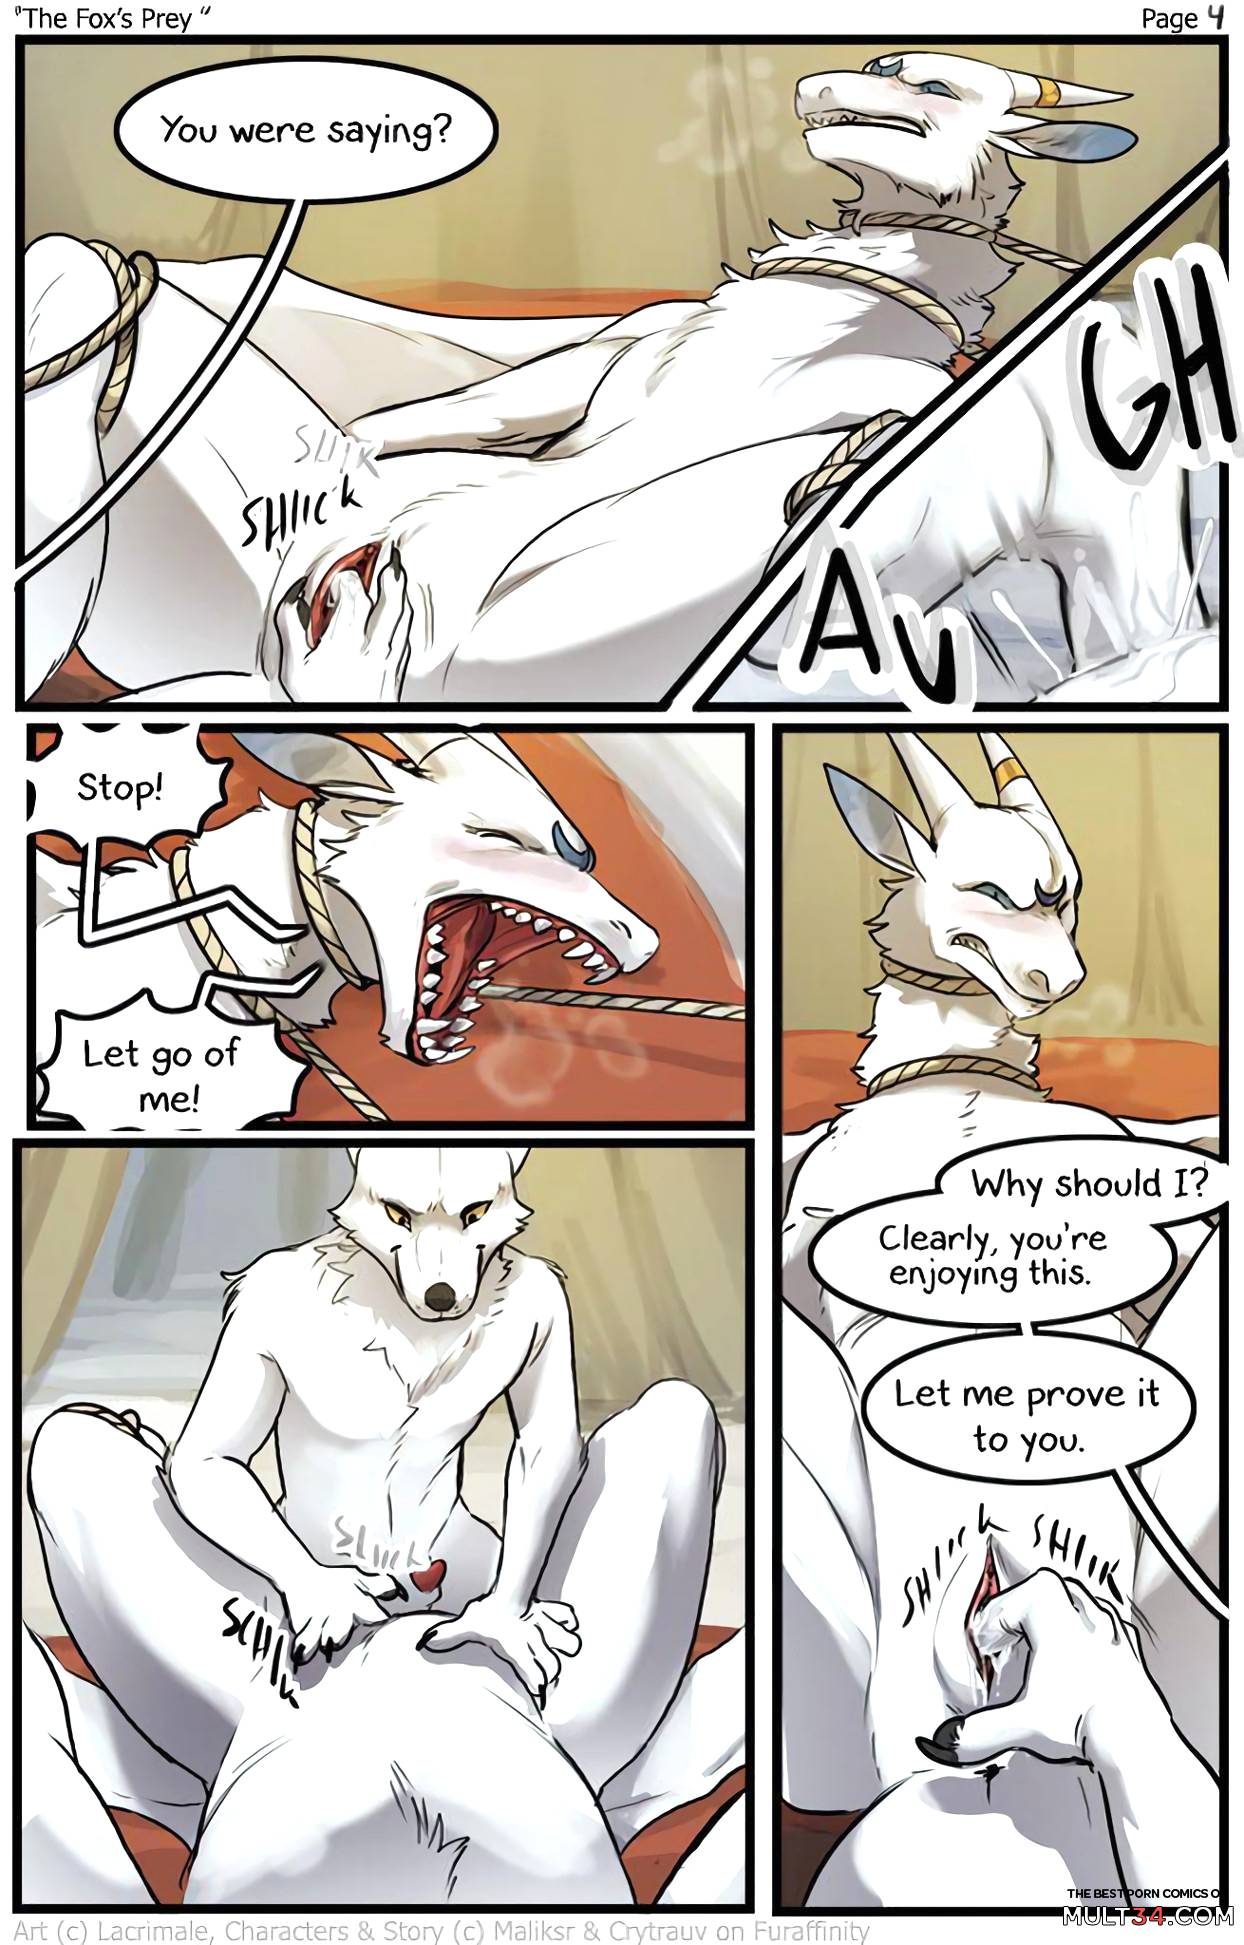 The Fox's prey page 4